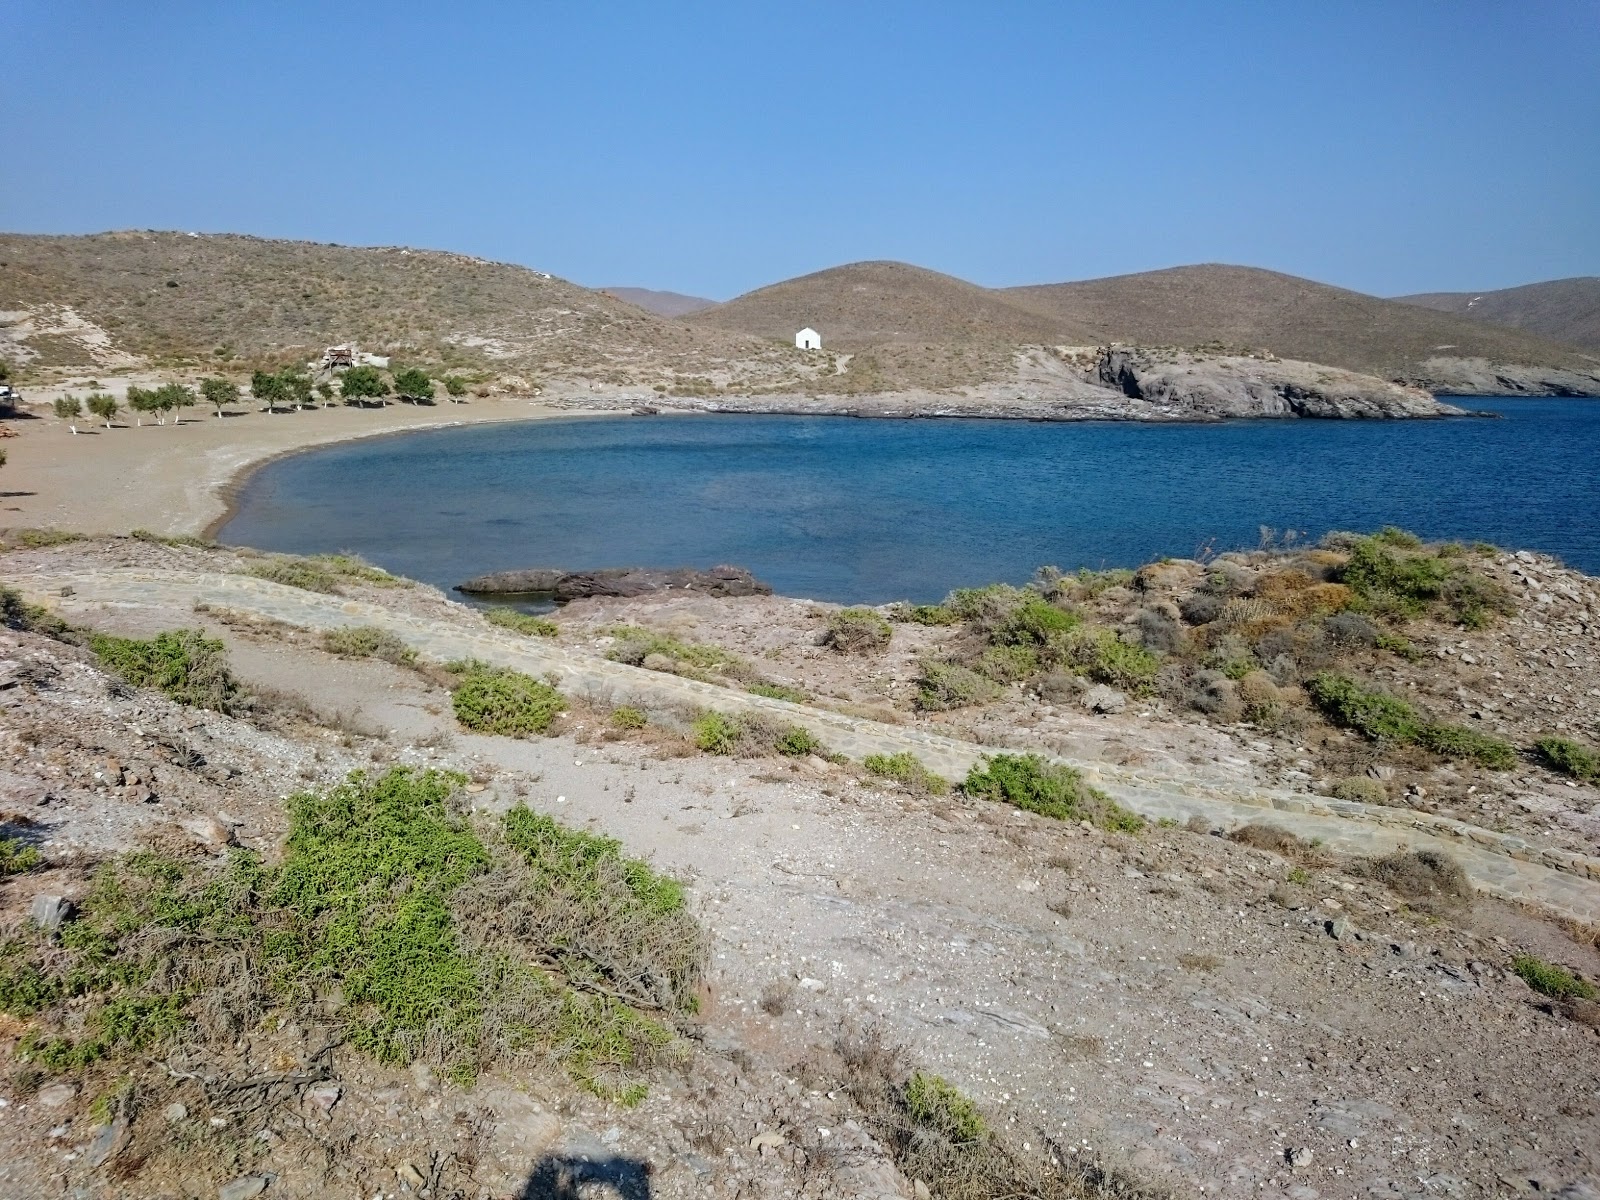 Psara beach'in fotoğrafı kahverengi kum yüzey ile